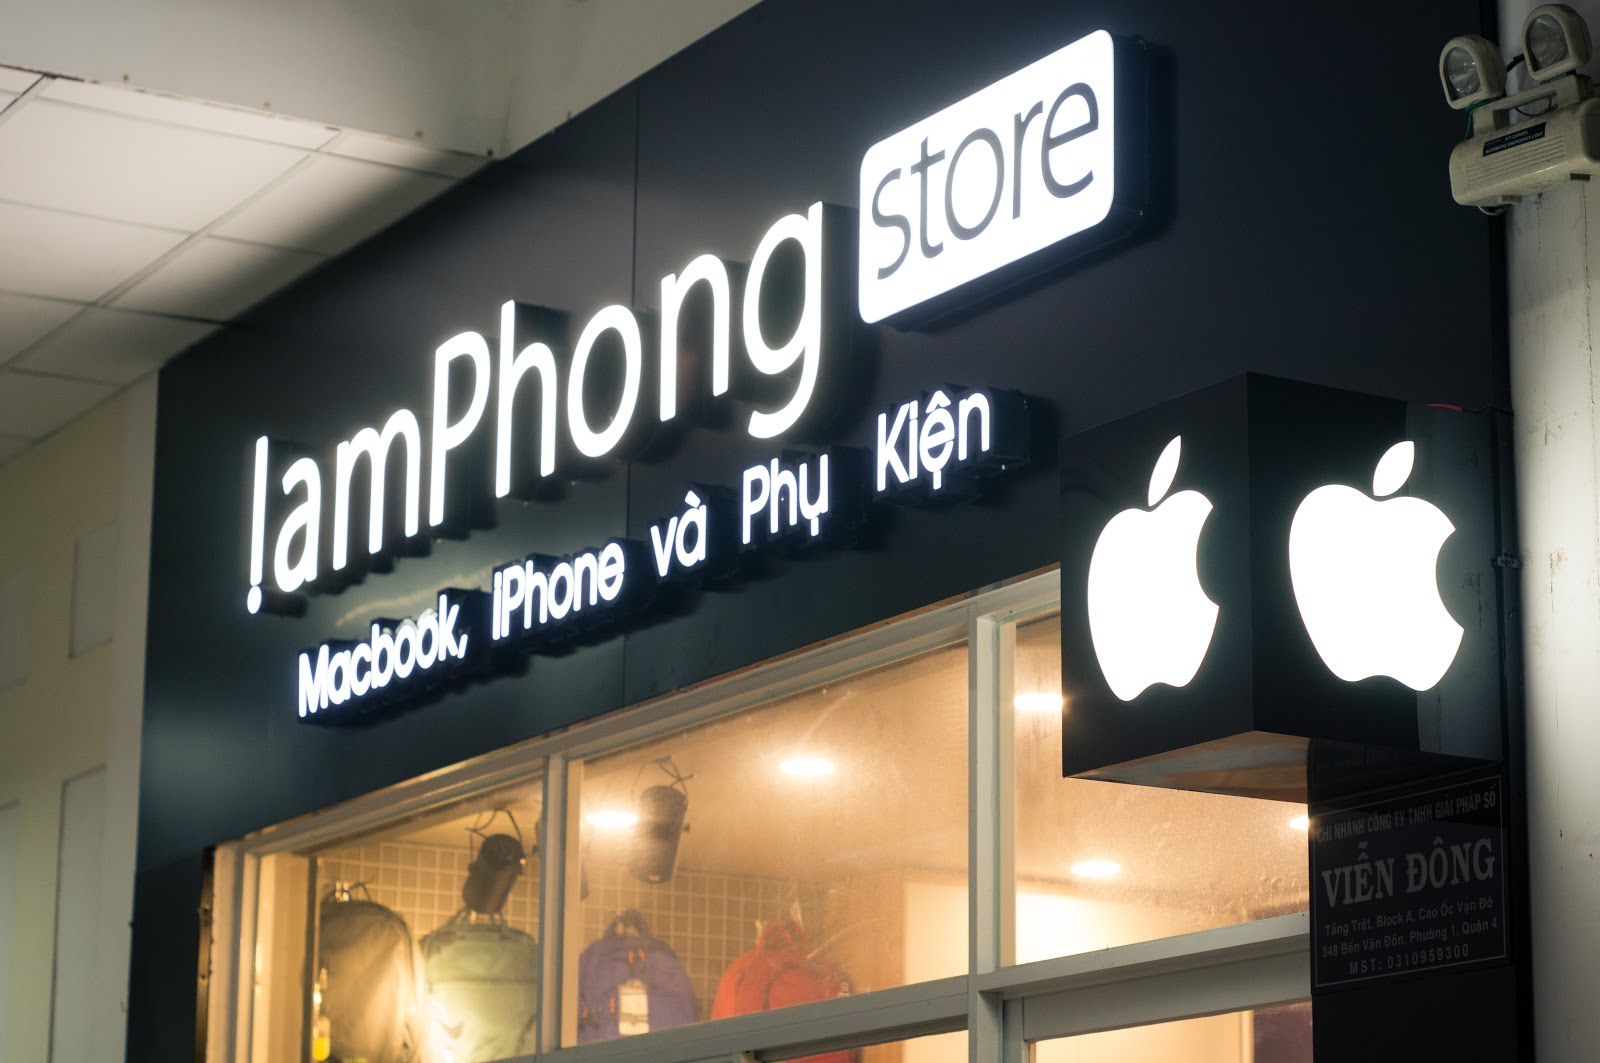 Trung tâm bảo hành Apple TPHCM uy tín - Lâm Phong Store